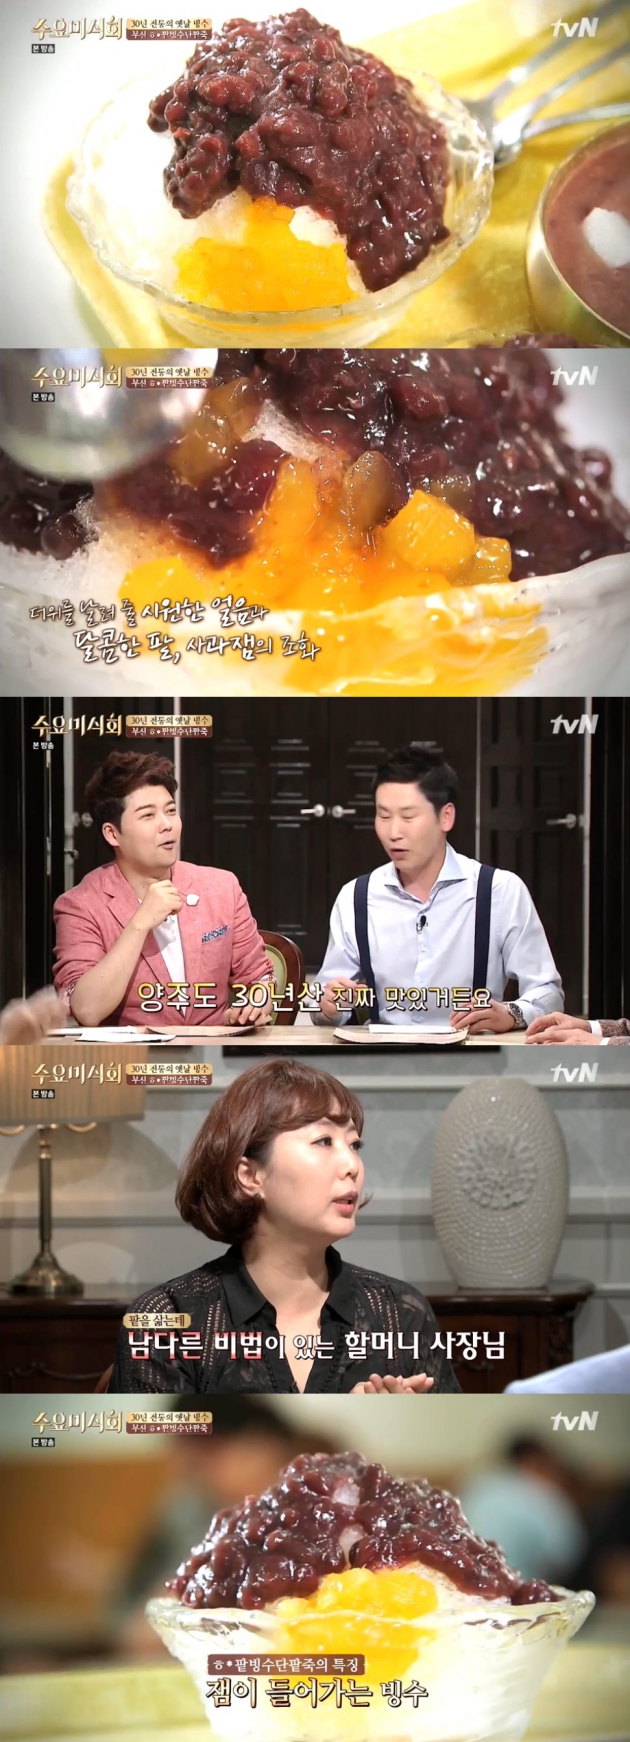 수요미식회 할매팥빙수단팥죽 / 수요미식회 할매팥빙수단팥죽 사진=tvN 방송 캡처